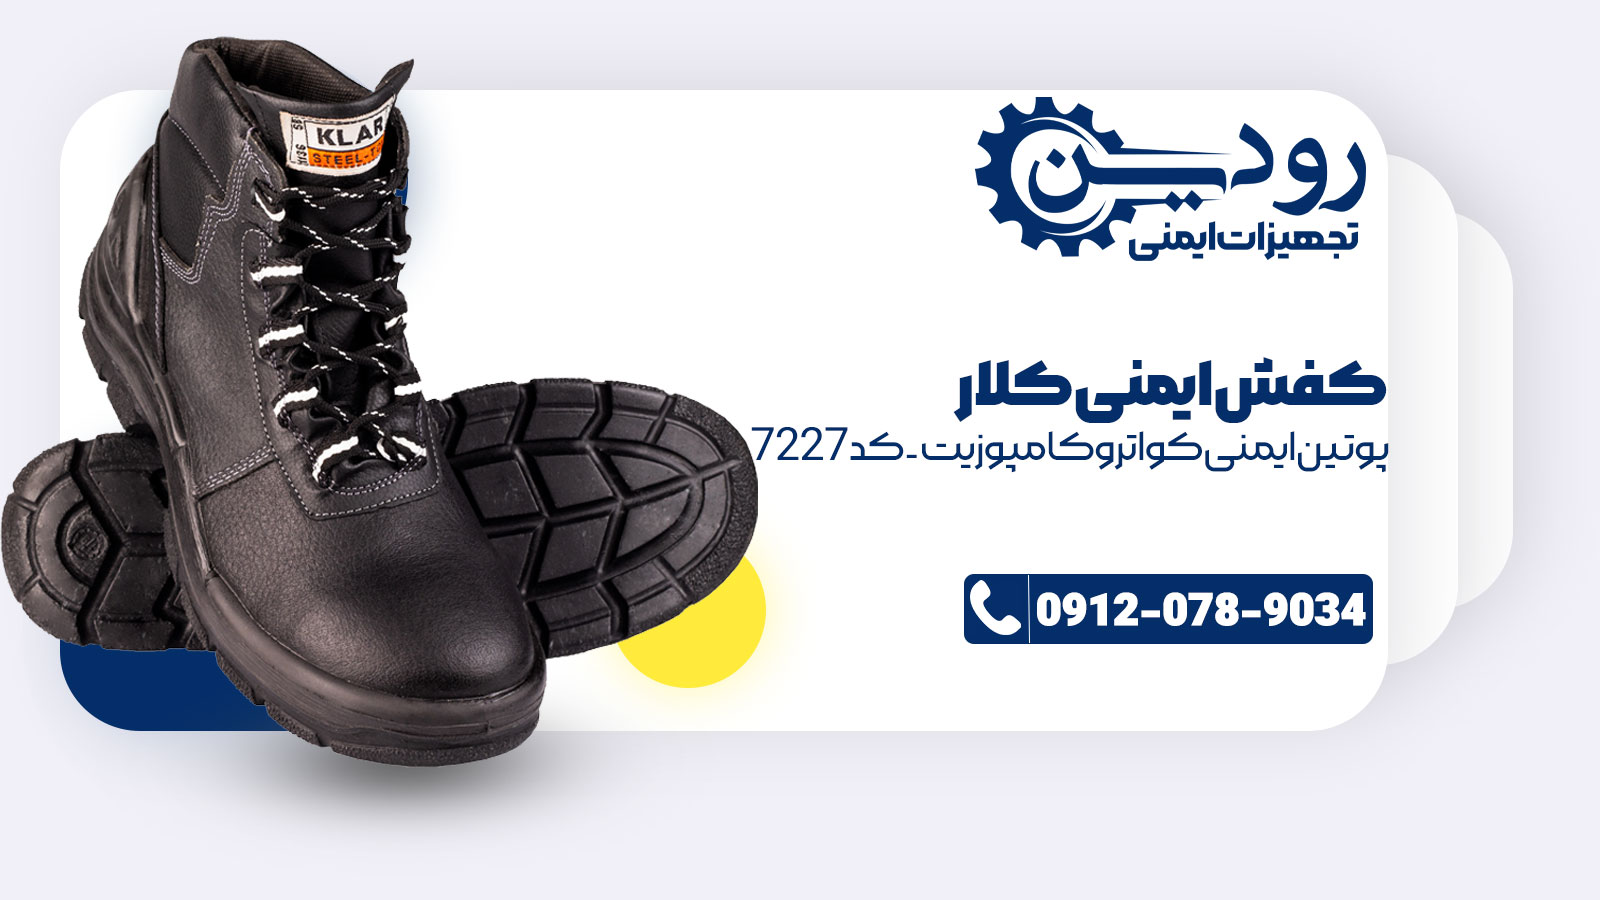 محصولات مرکز فروش کفش ایمنی کلار در سایت ما قرار دارد.